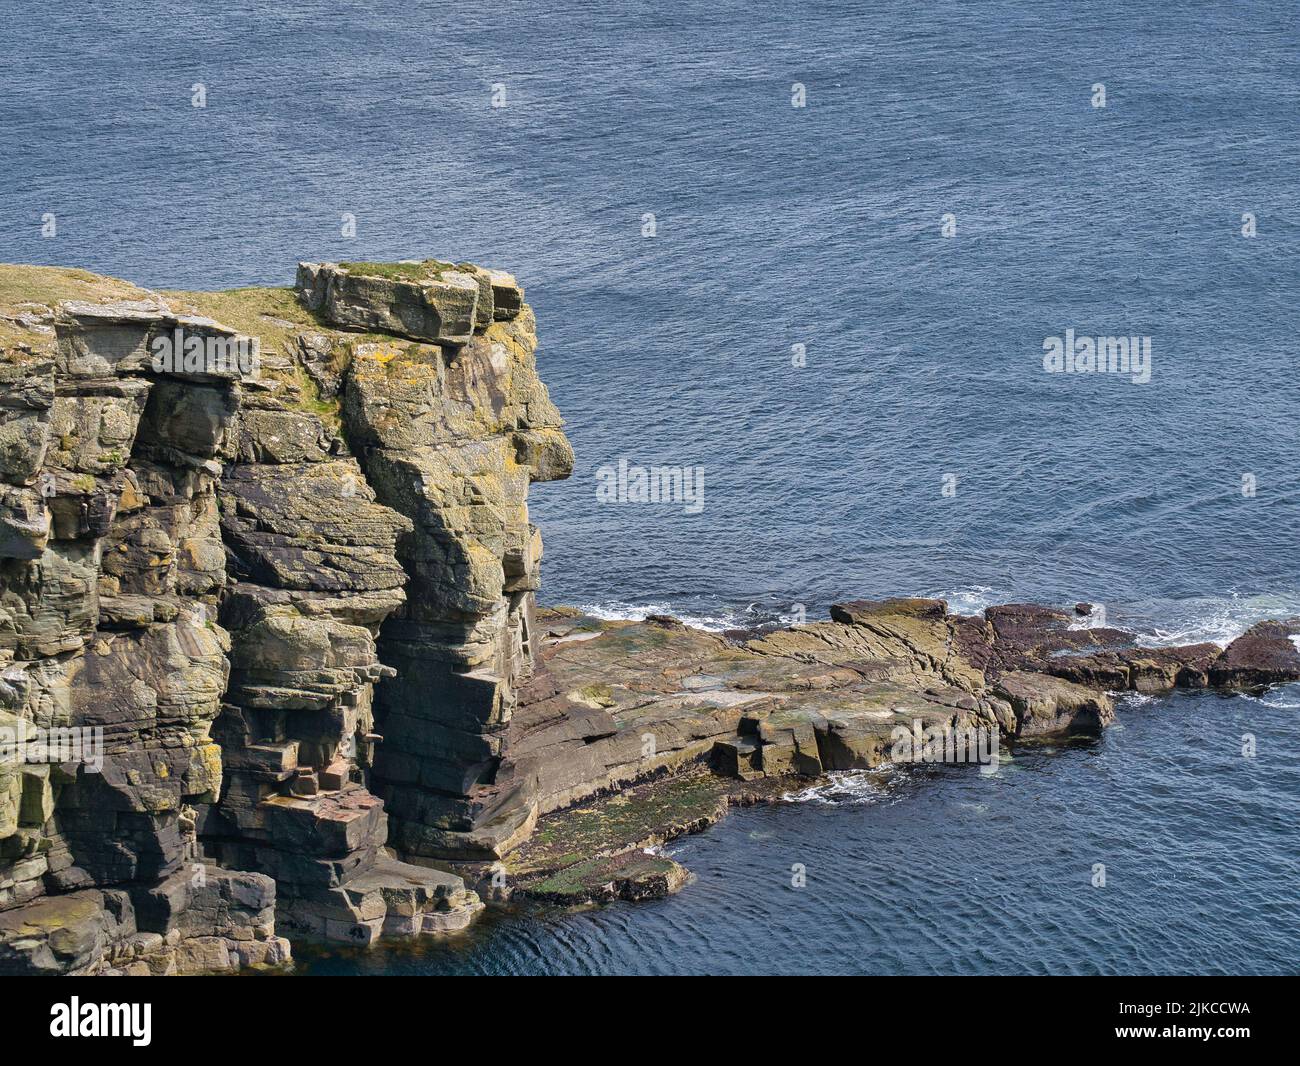 Una gran losa de roca en la cima de un acantilado costero cerca de Sandwick, Shetland, Reino Unido. Posiblemente depositado por glaciación. Foto de stock